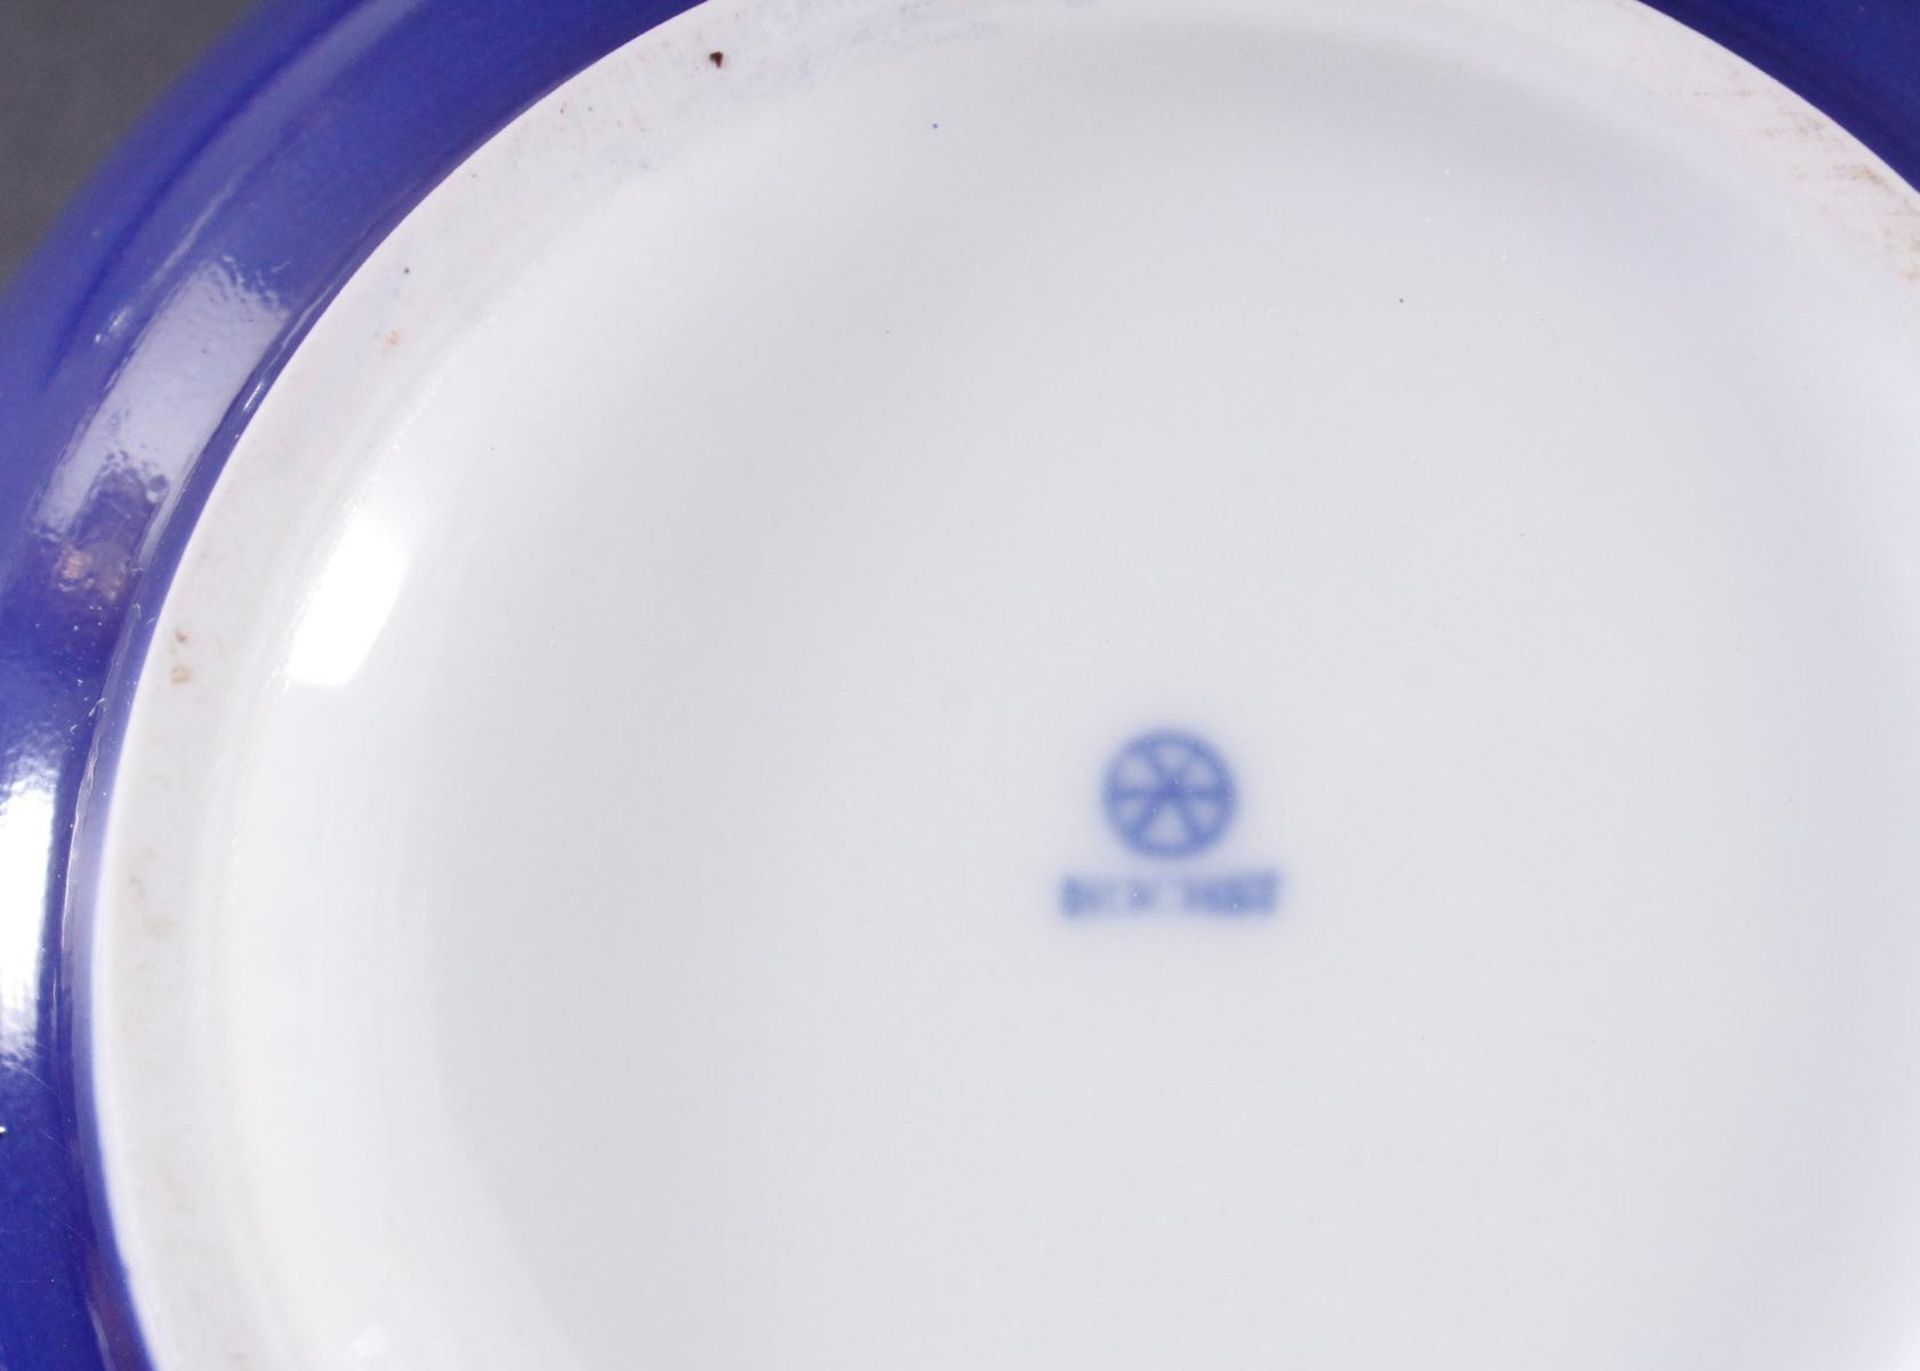 Deckeldose, HöchstRunde Form, Weißporzellan mit polychromer Bemalung, Goldrand, blaue Radmarke, - Bild 3 aus 3